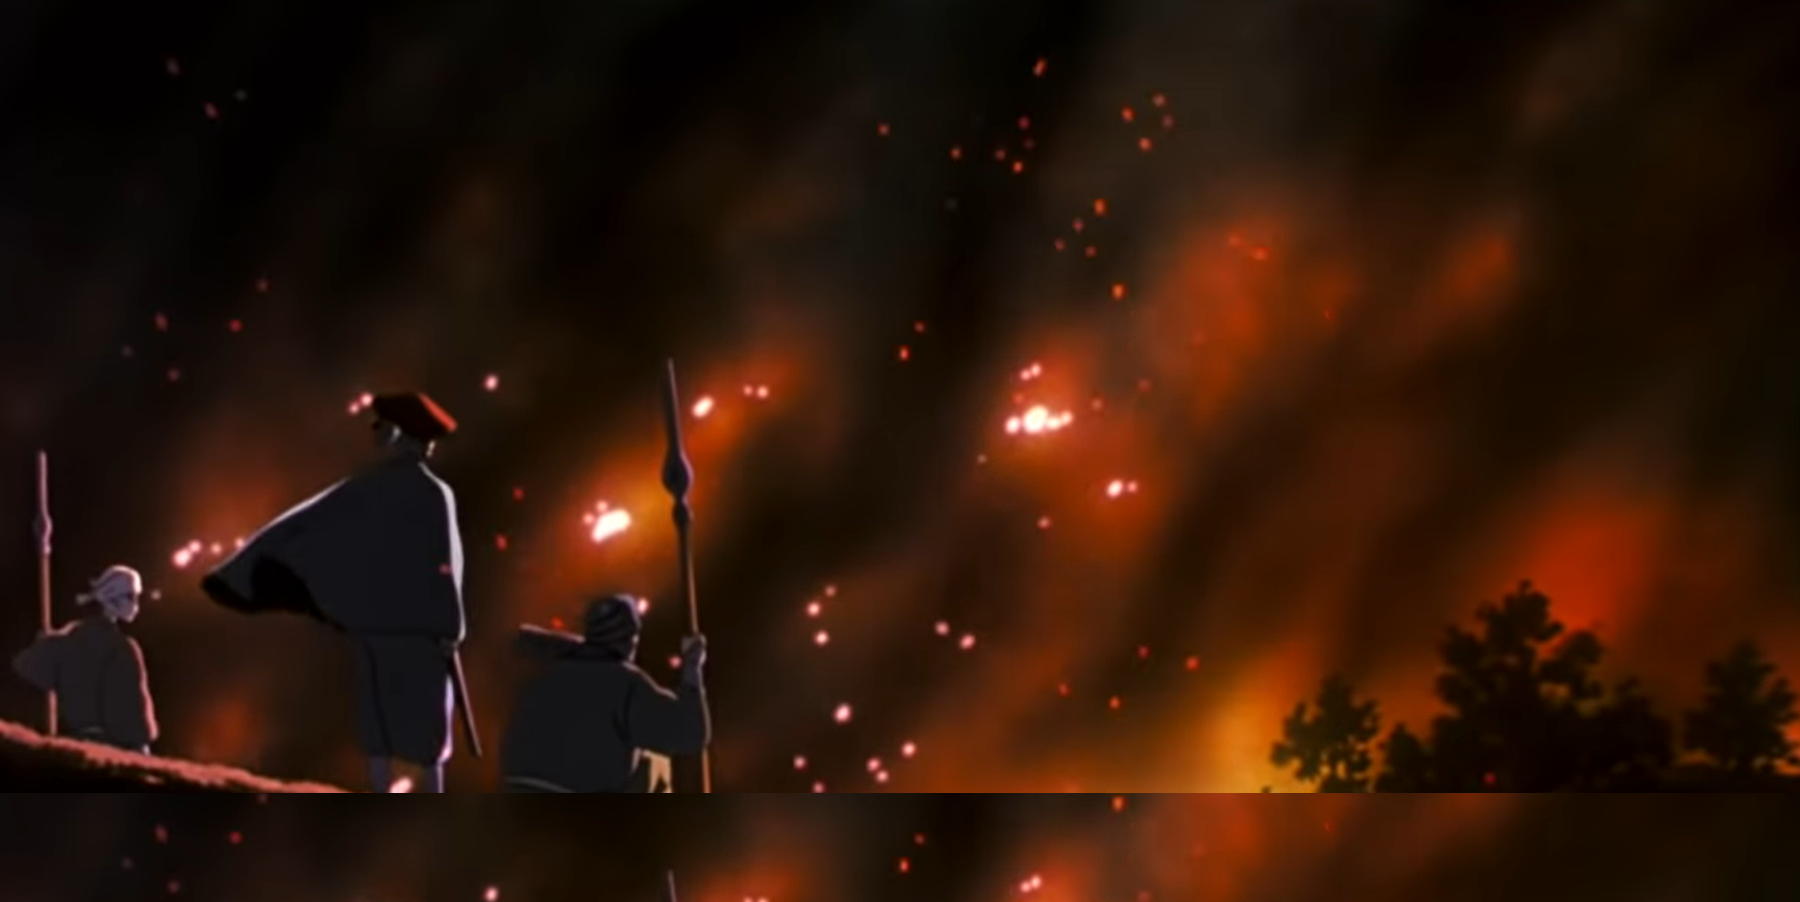 Princess Mononoke fire